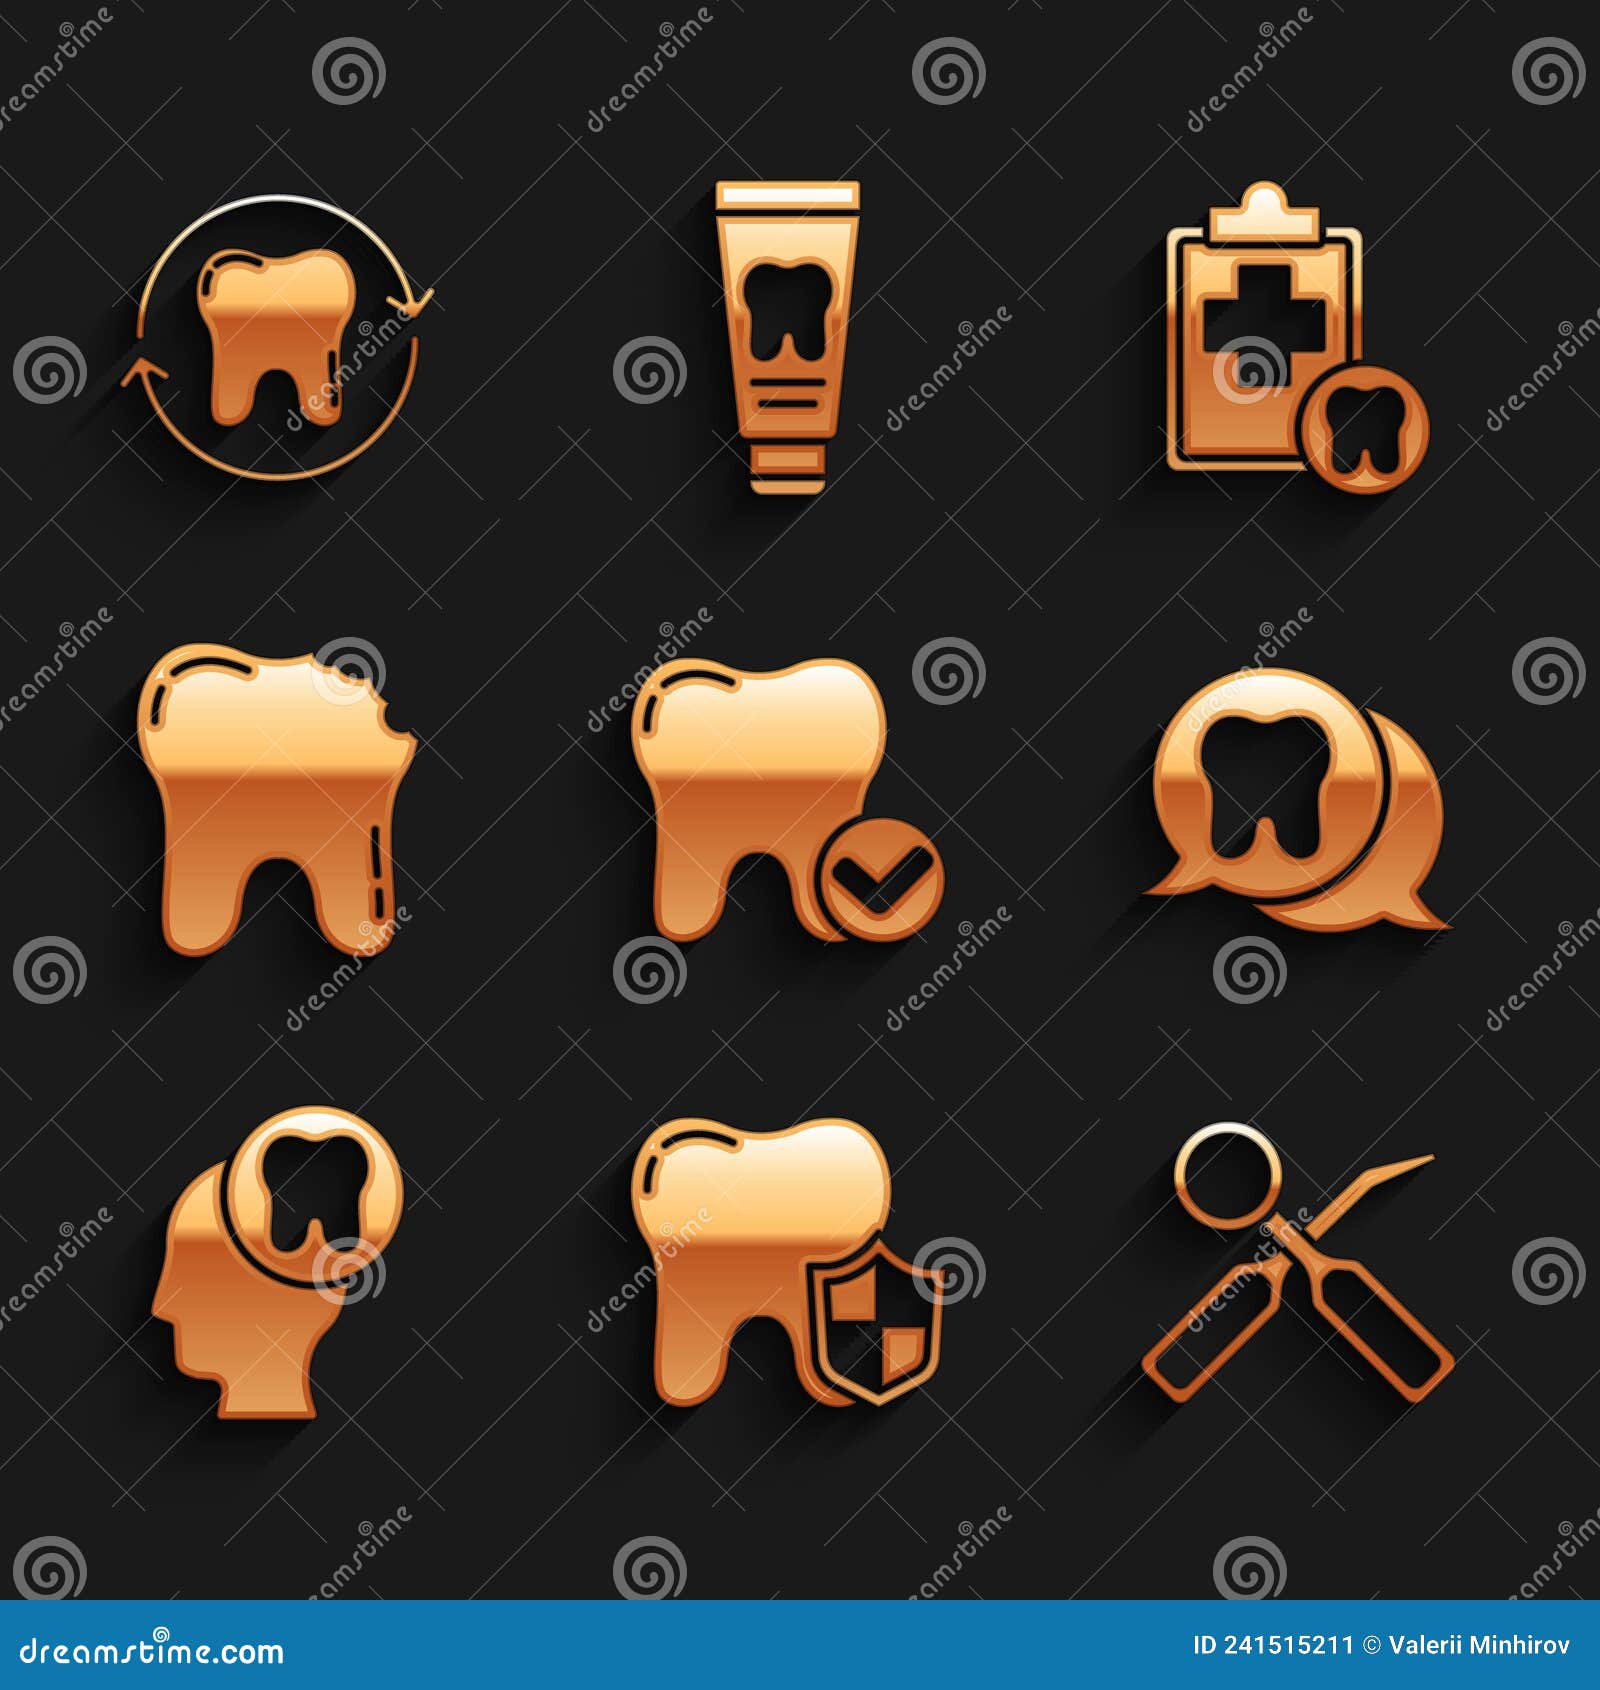 Icono de espejo dental y gancho.: vector de stock (libre de regalías)  1659220687